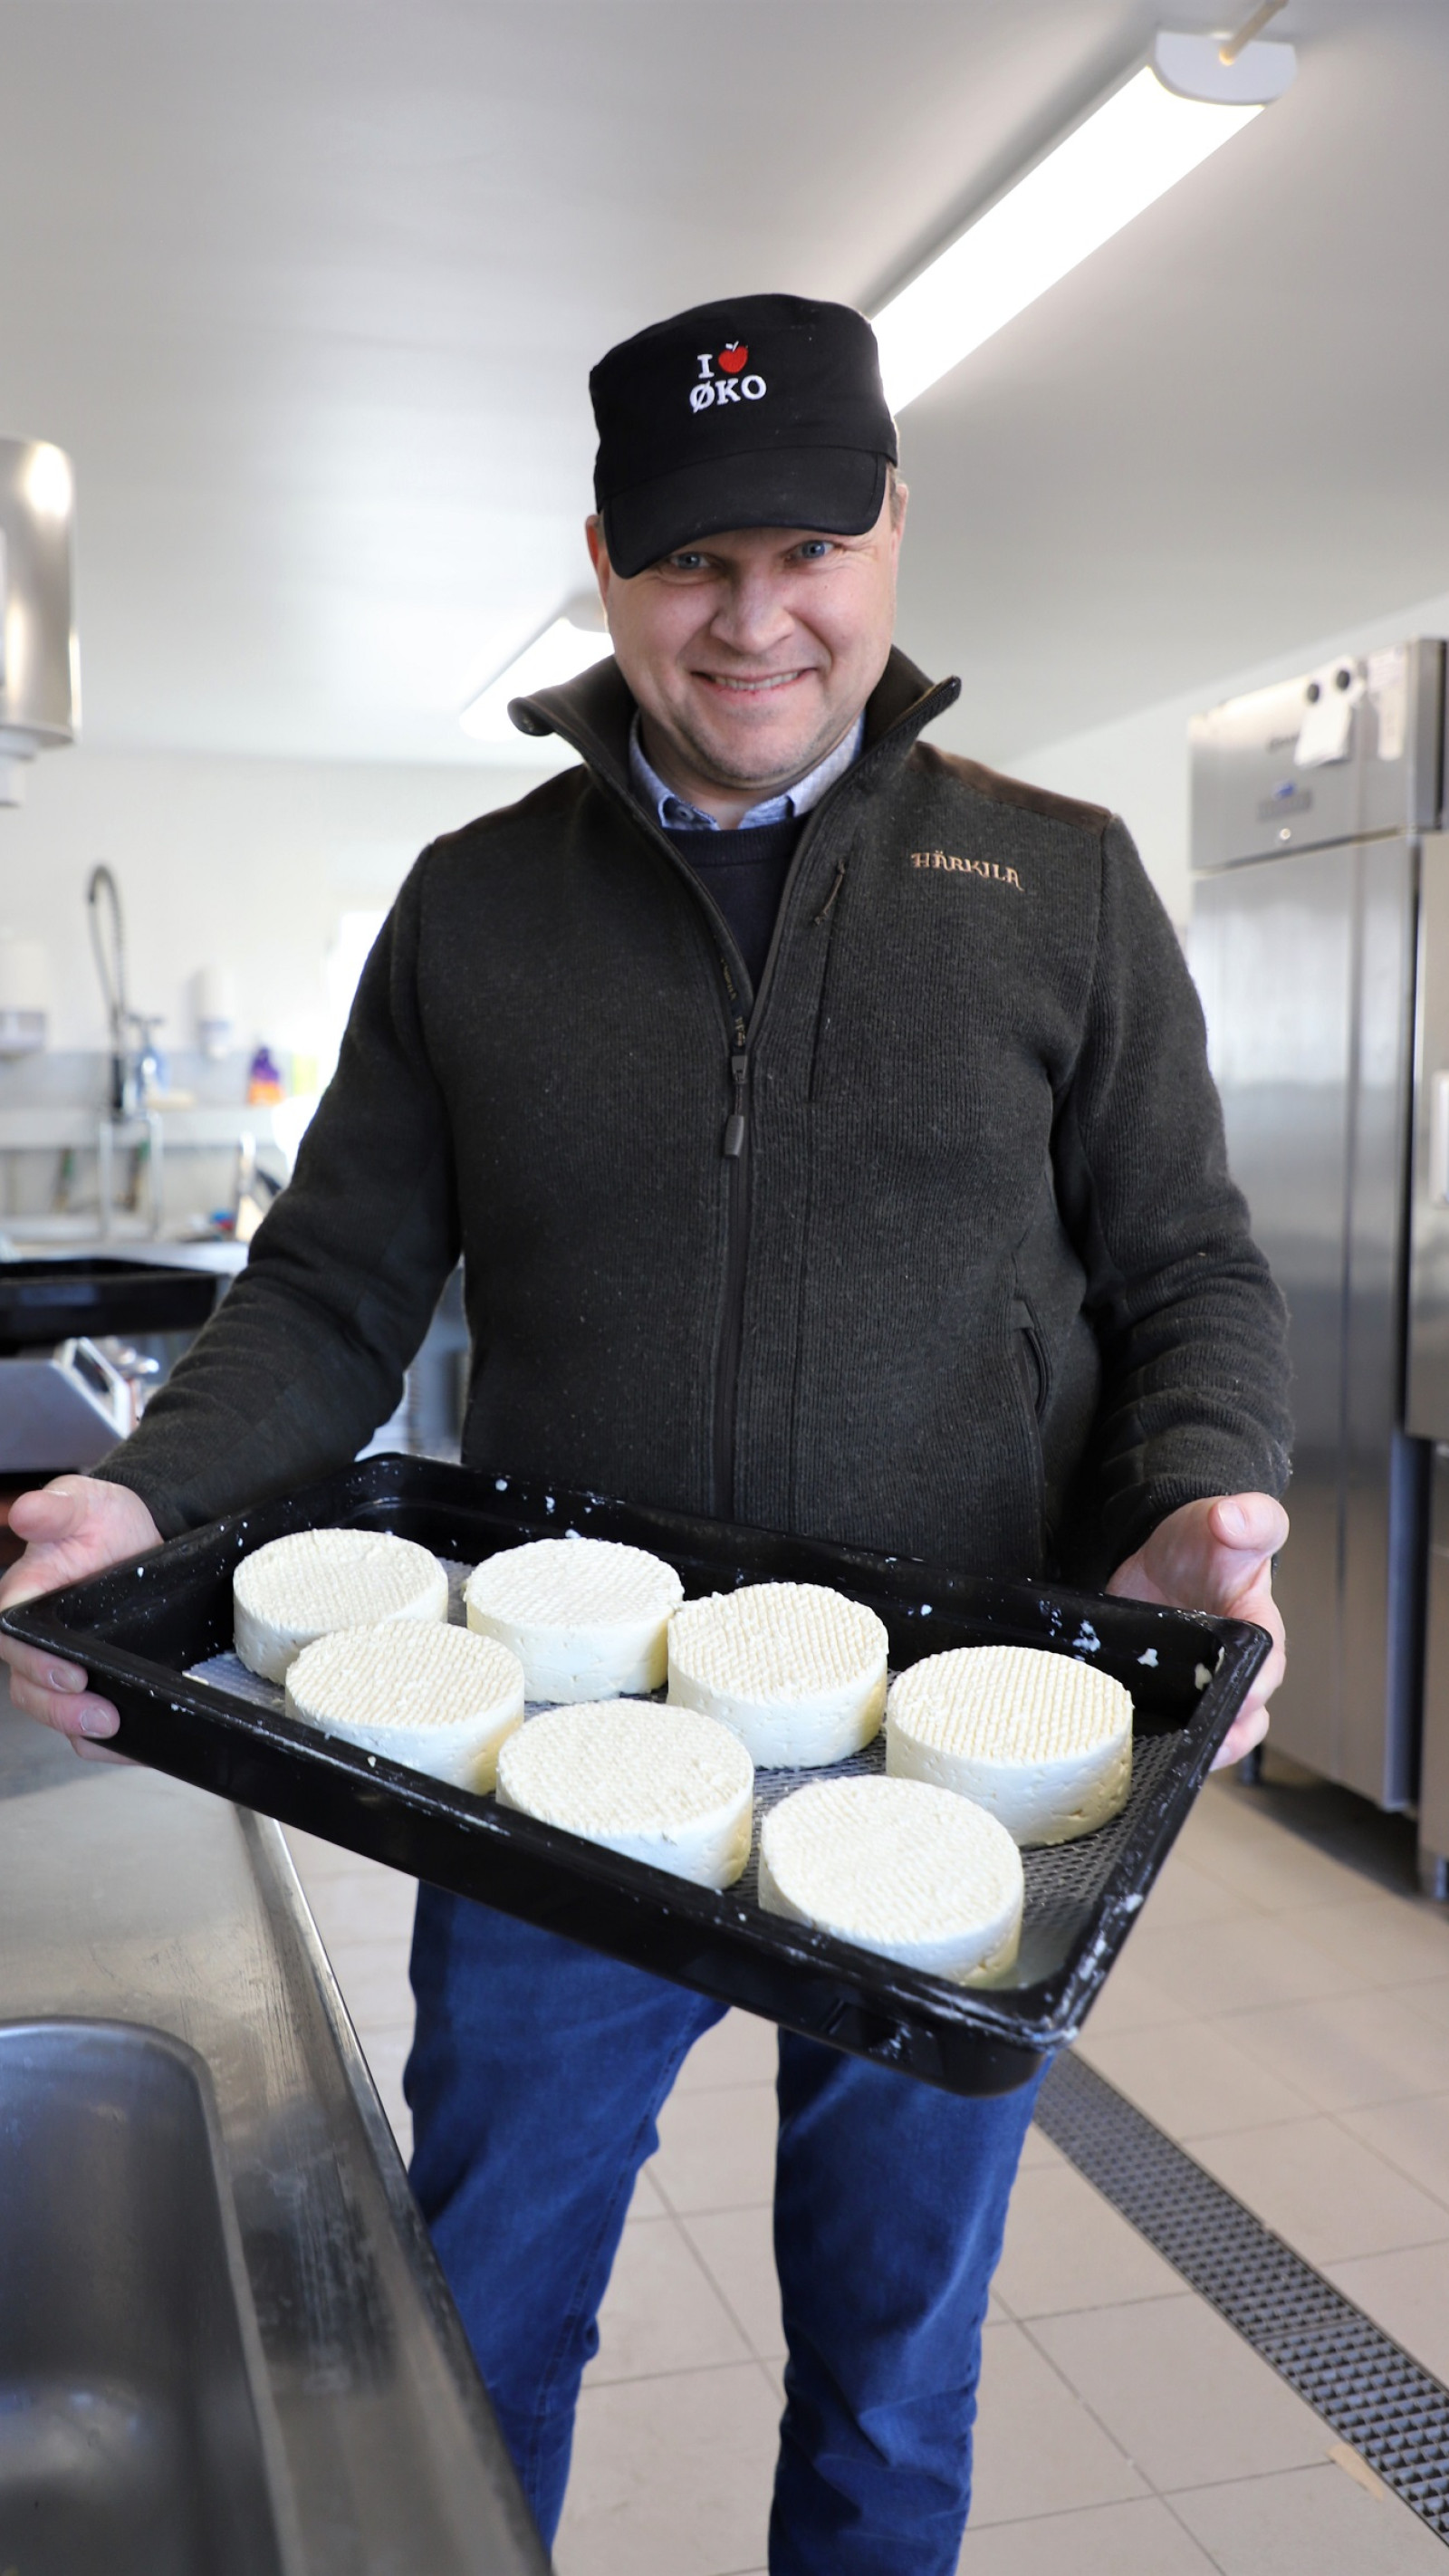 Op til Økodag har Morten Schultz lavet ost af mælk fra Tranegårds egne køer